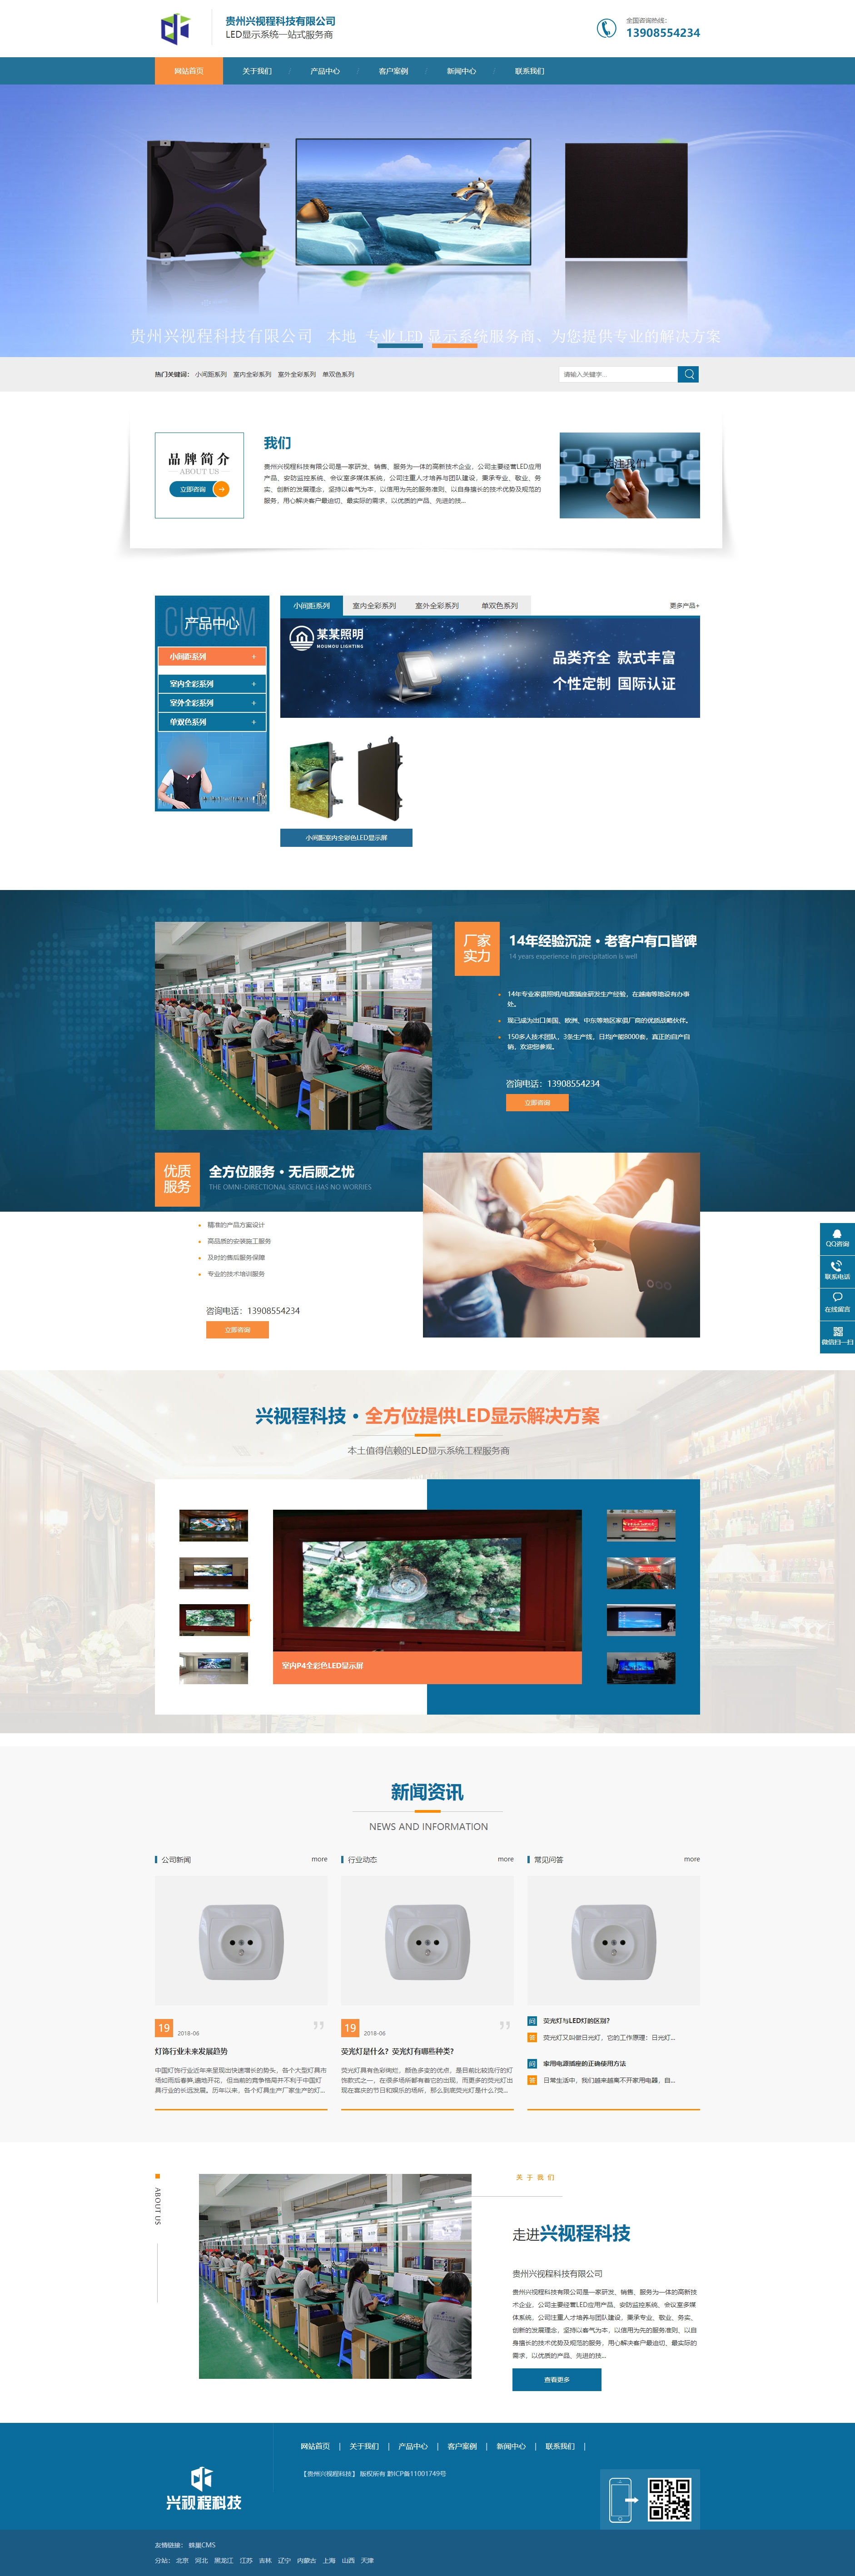 黔西南贵州兴视程科技有限公司 网站正式上线